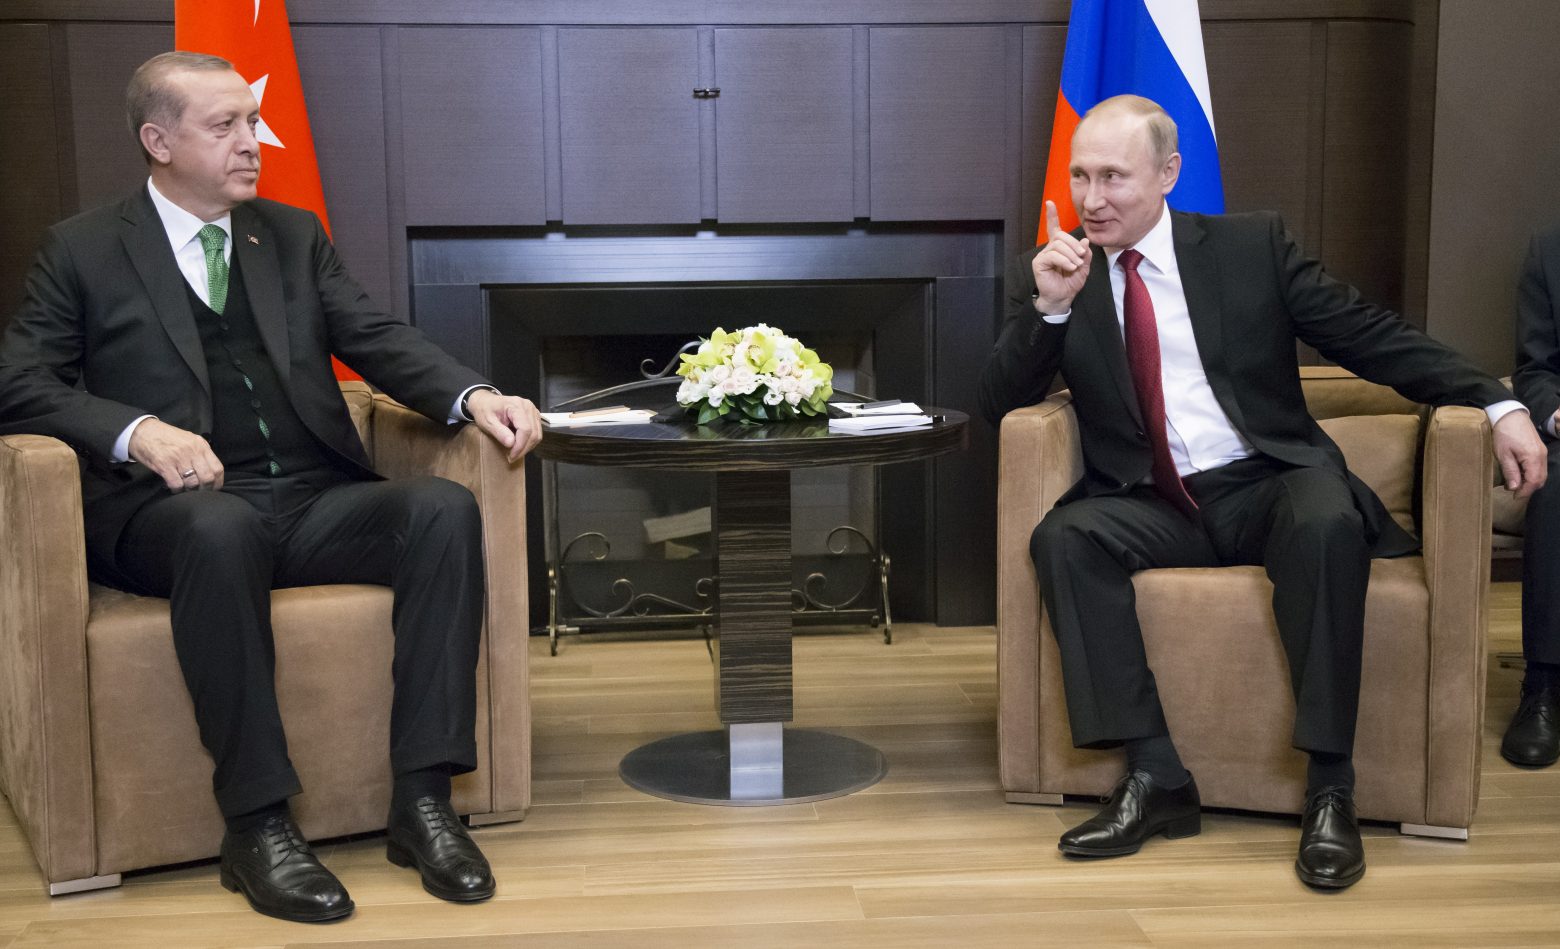 Ρωσία – Το δυνατό χαστούκι του Πούτιν στην Τουρκία ονομάζεται «Ταταρστάν»